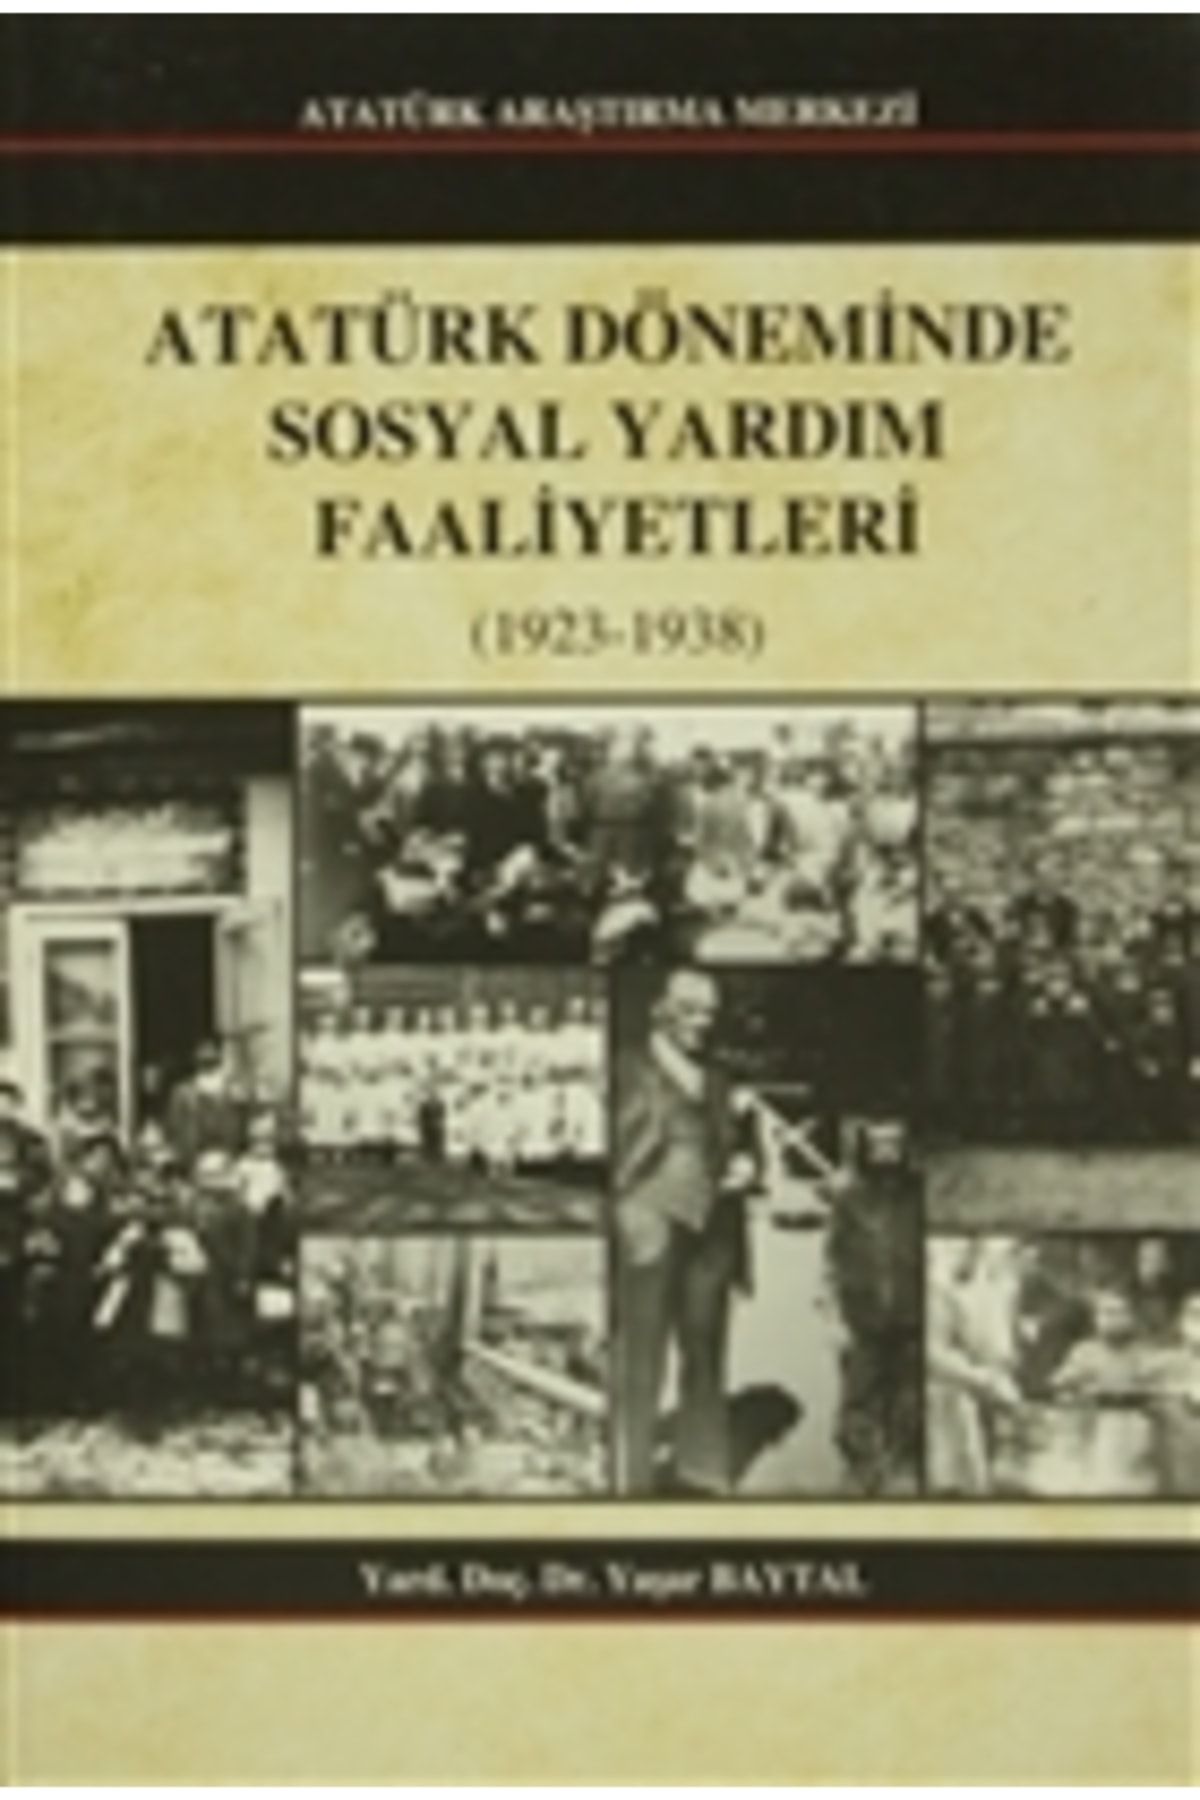 Atatürk Araştırma Merkezi Atatürk Döneminde Sosyal Yardım Faaliyetleri Yaşar Baytal